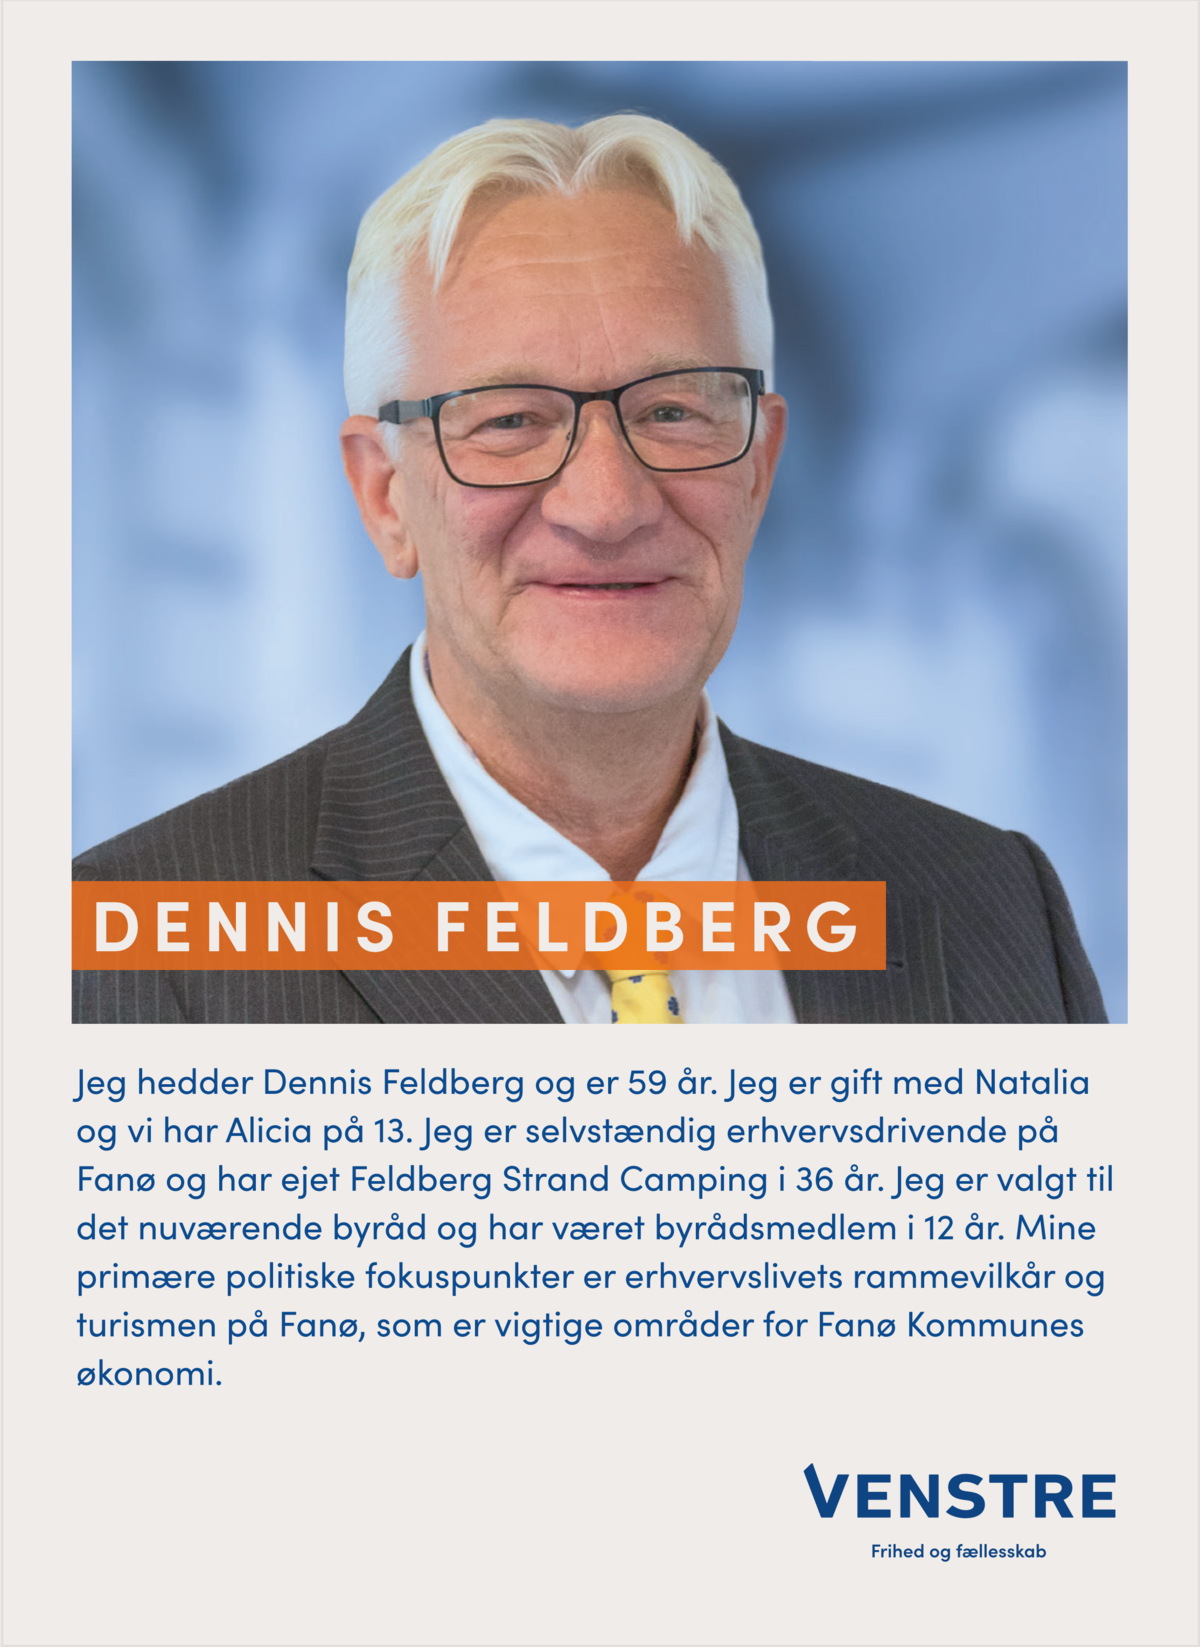 Dennis Feldberg